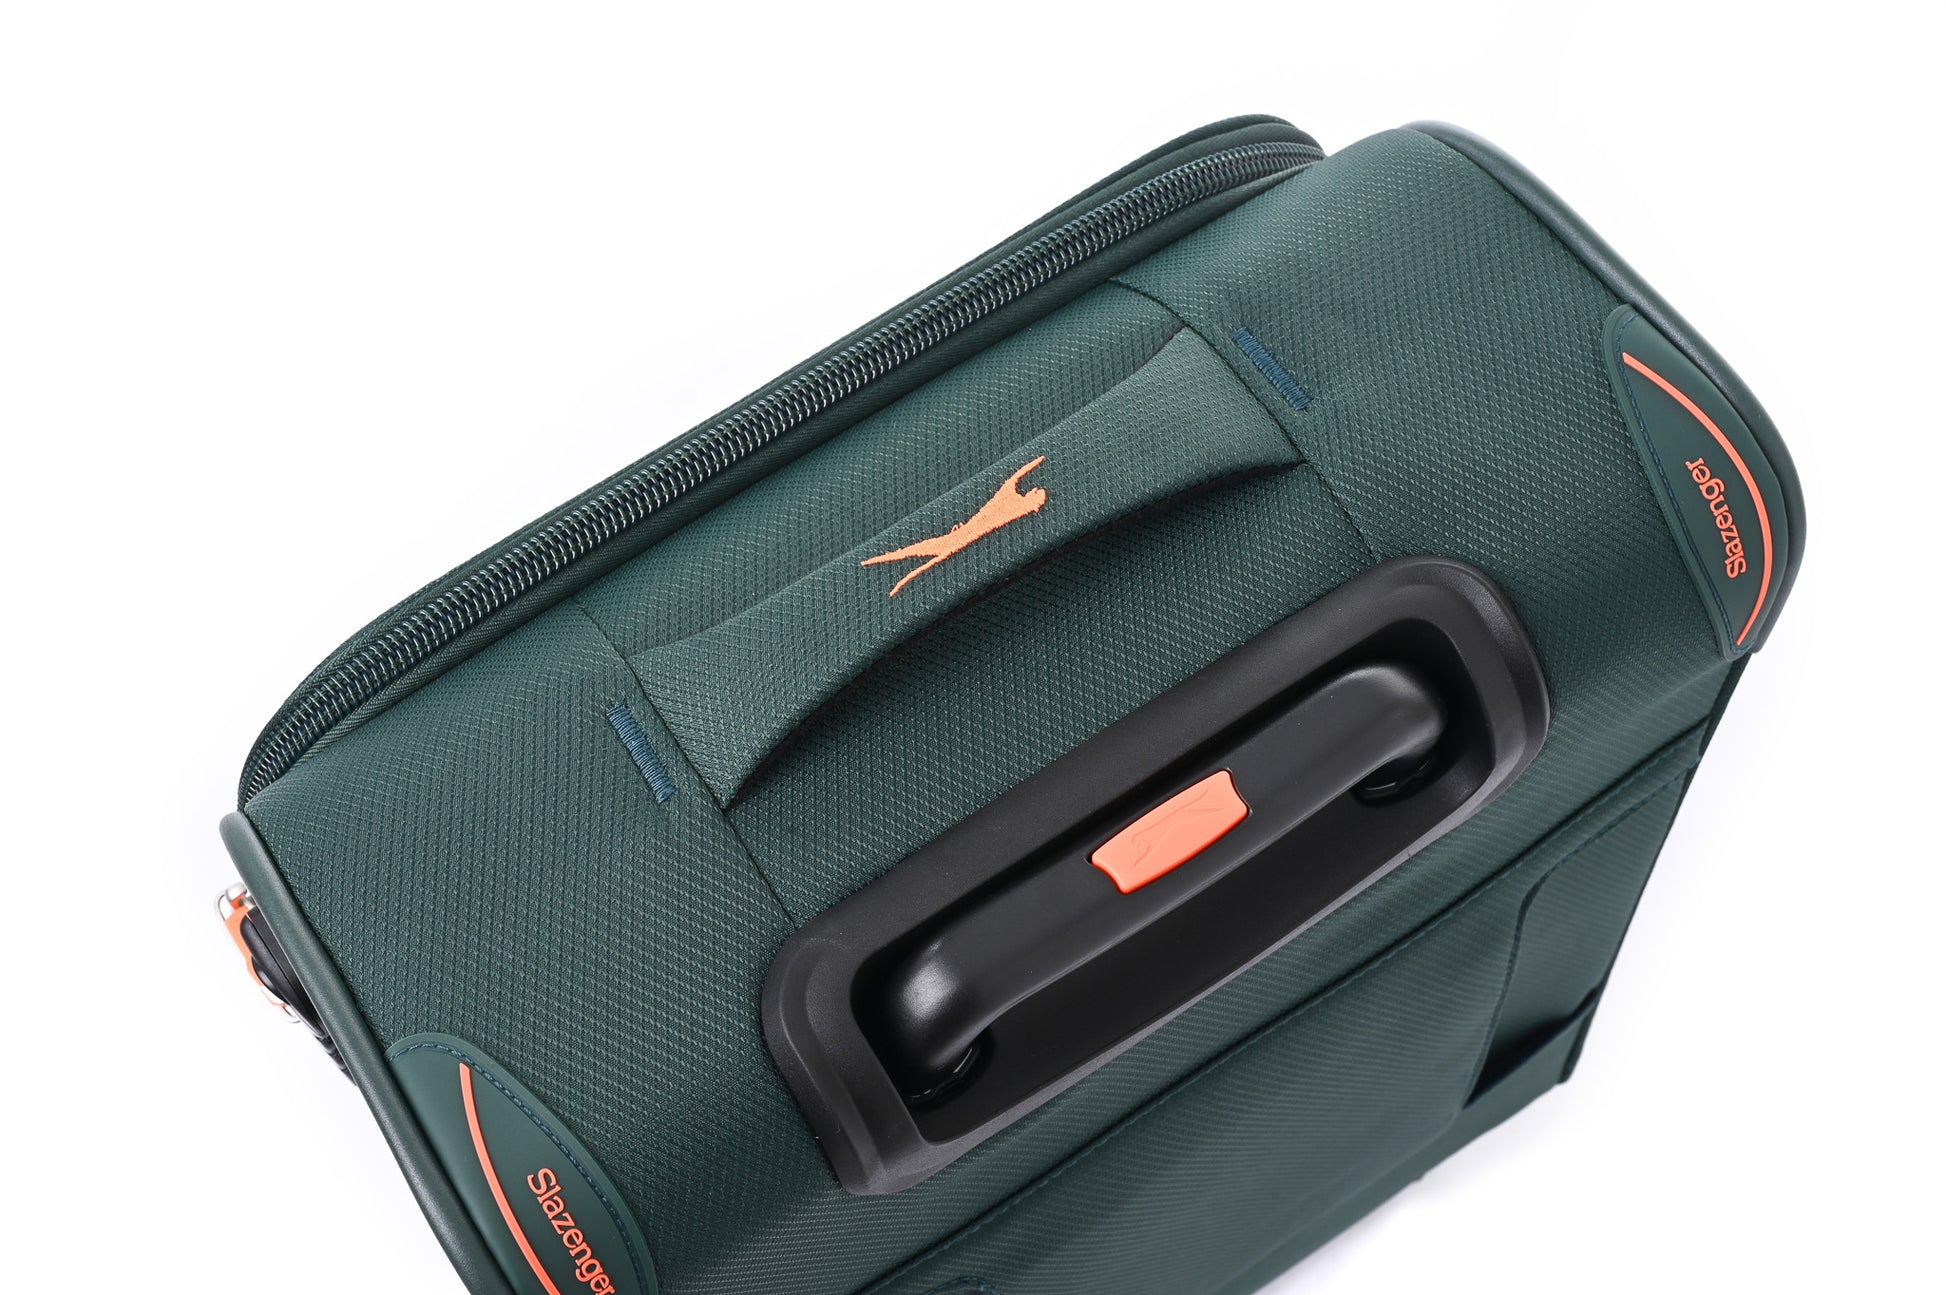 מזוודה טרולי עלייה למטוס ''18.5 דגם BARCELONA בצבע ירוק